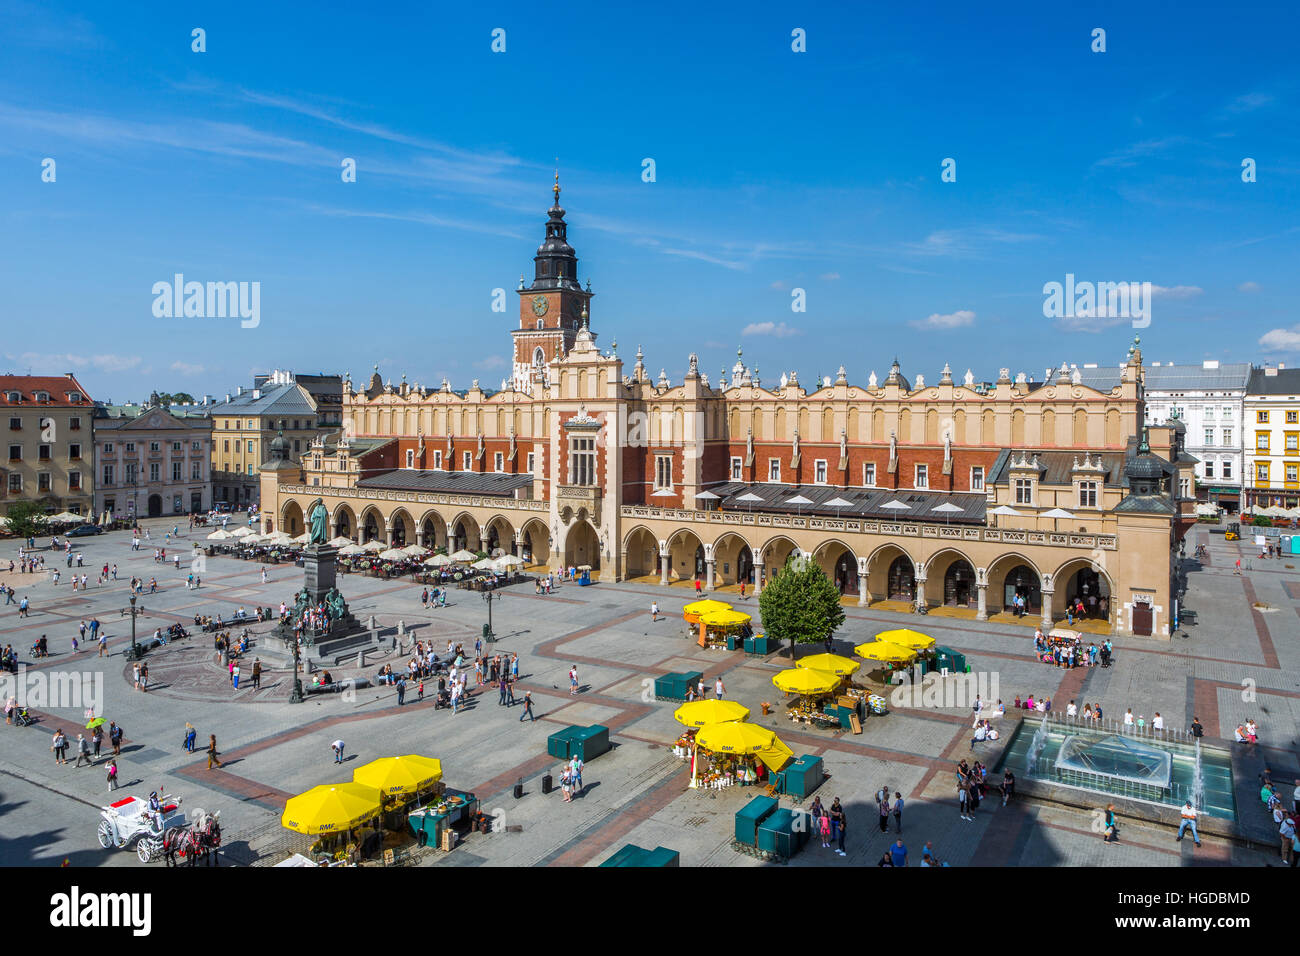 La Plaza del Mercado de Cracovia. Foto de stock